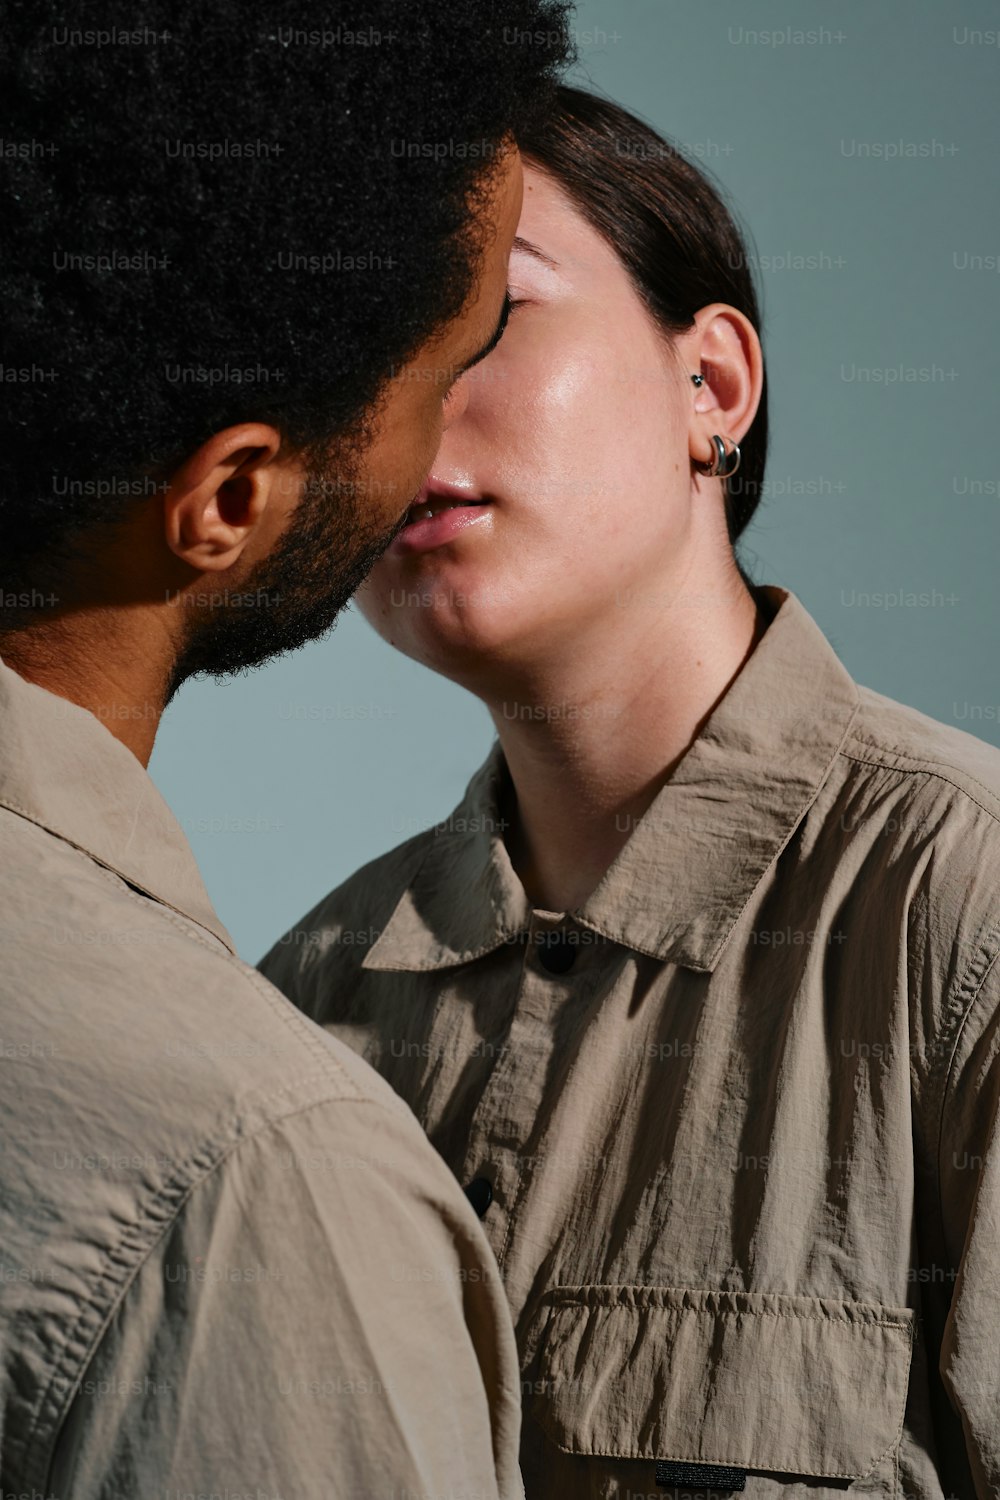 ein Mann und eine Frau küssen sich